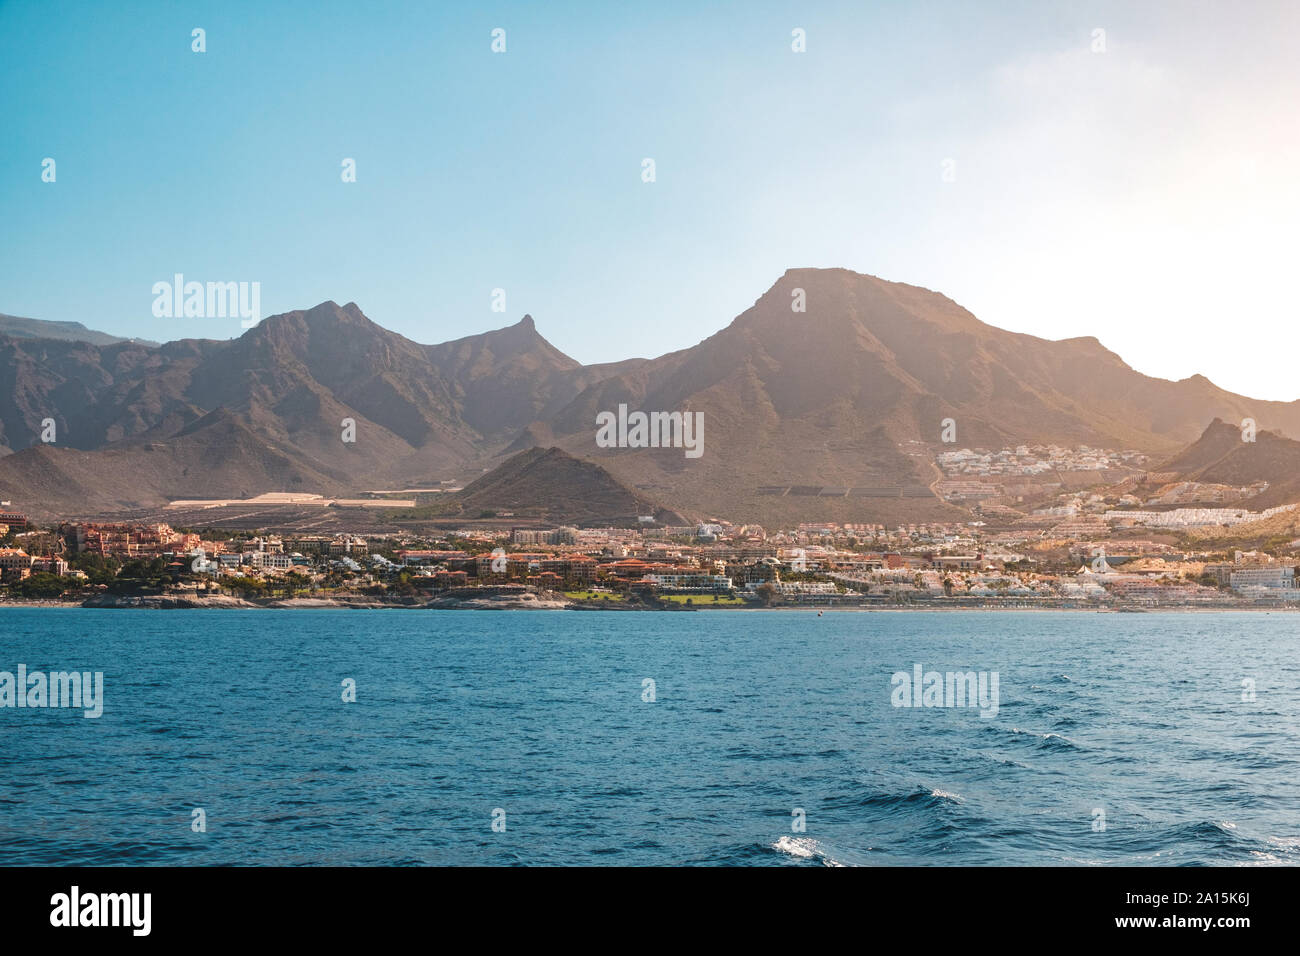 Ocean View am Ufer mit Hotels und Stadt und einen malerischen Berg Hintergrund - Küste von Teneriffa - Stockfoto